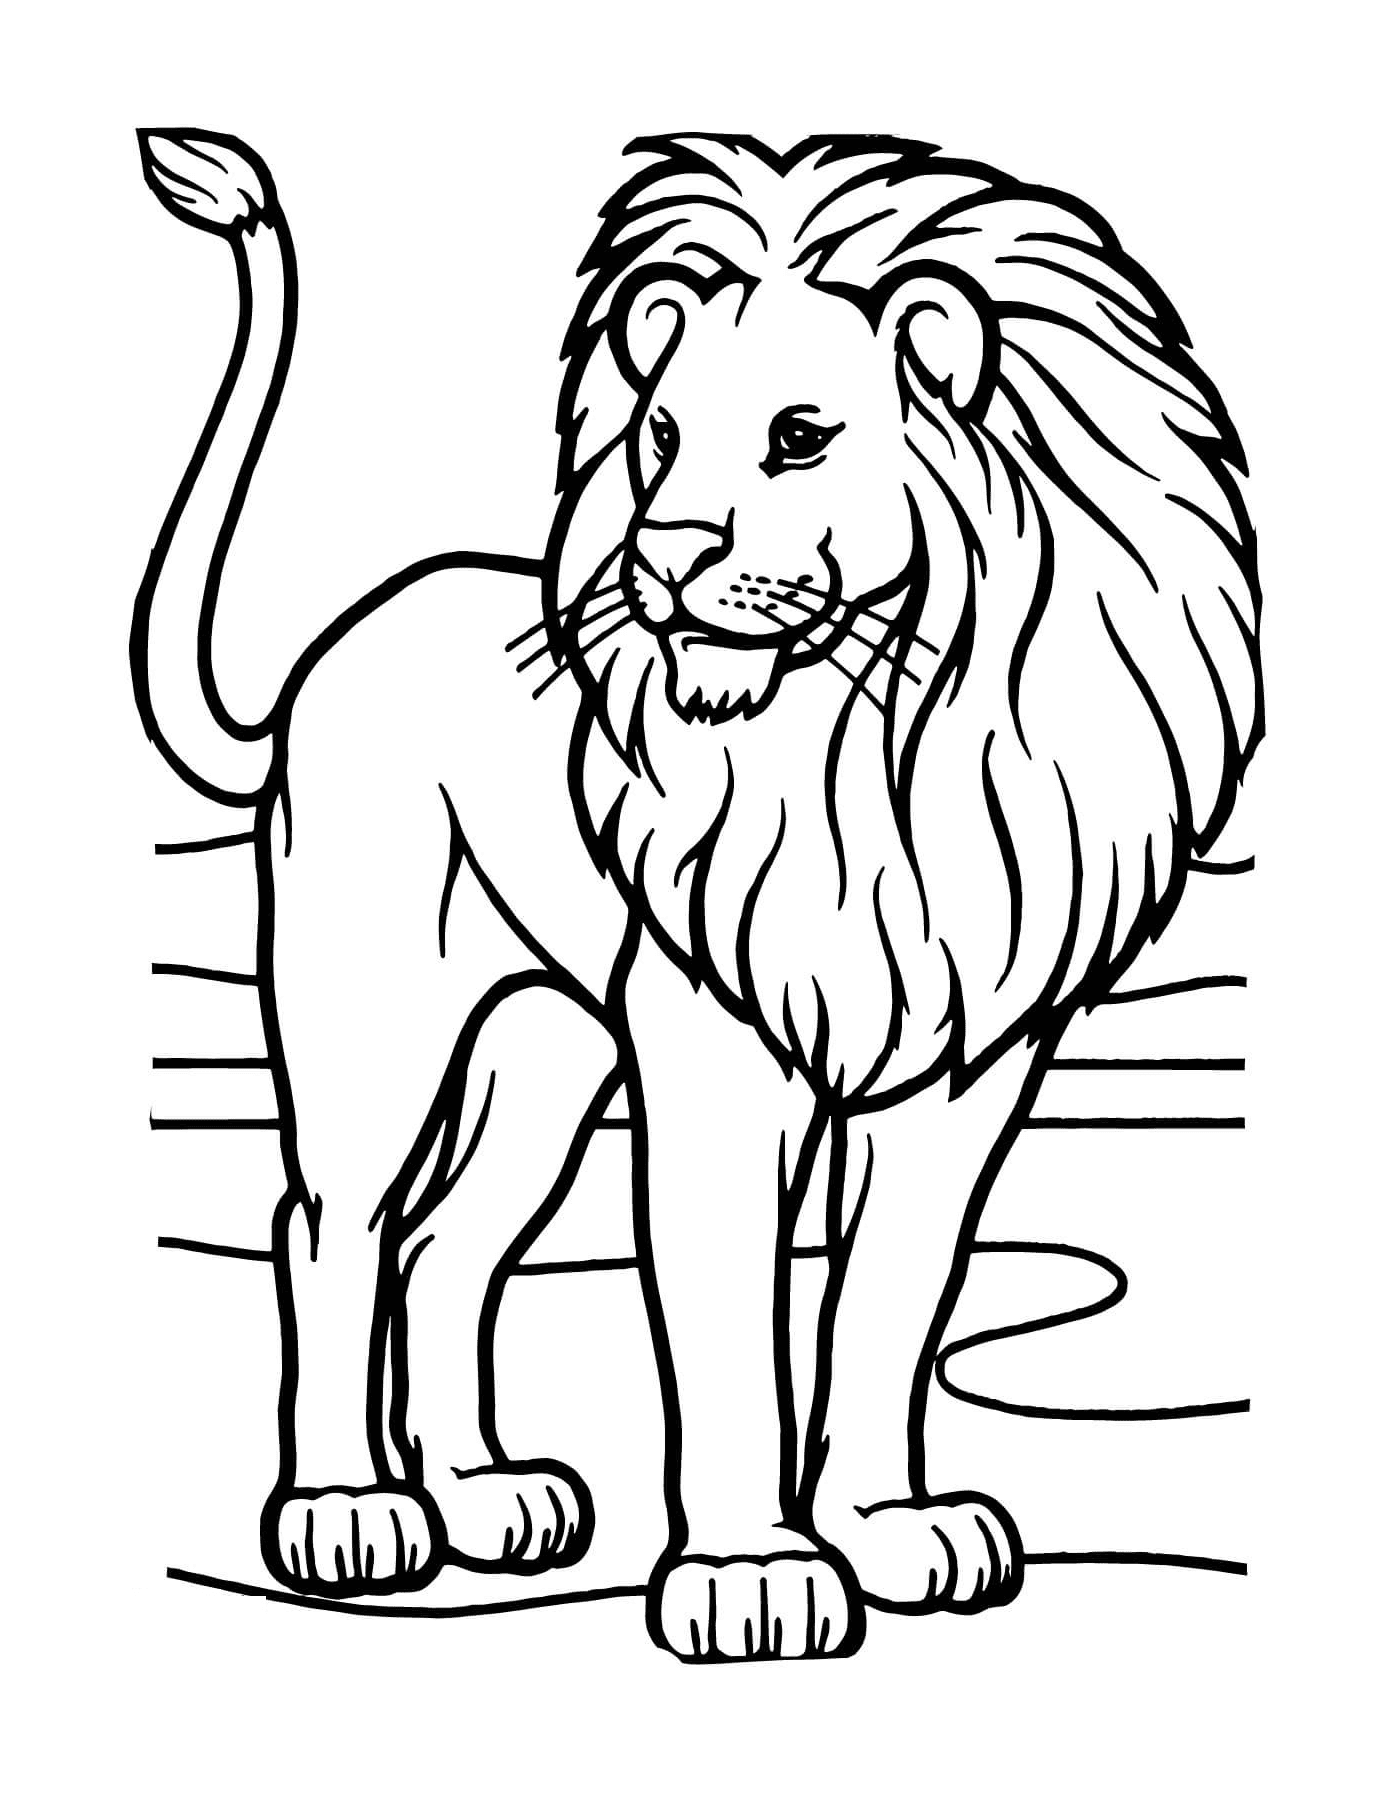  leone africano selvaggio e potente 